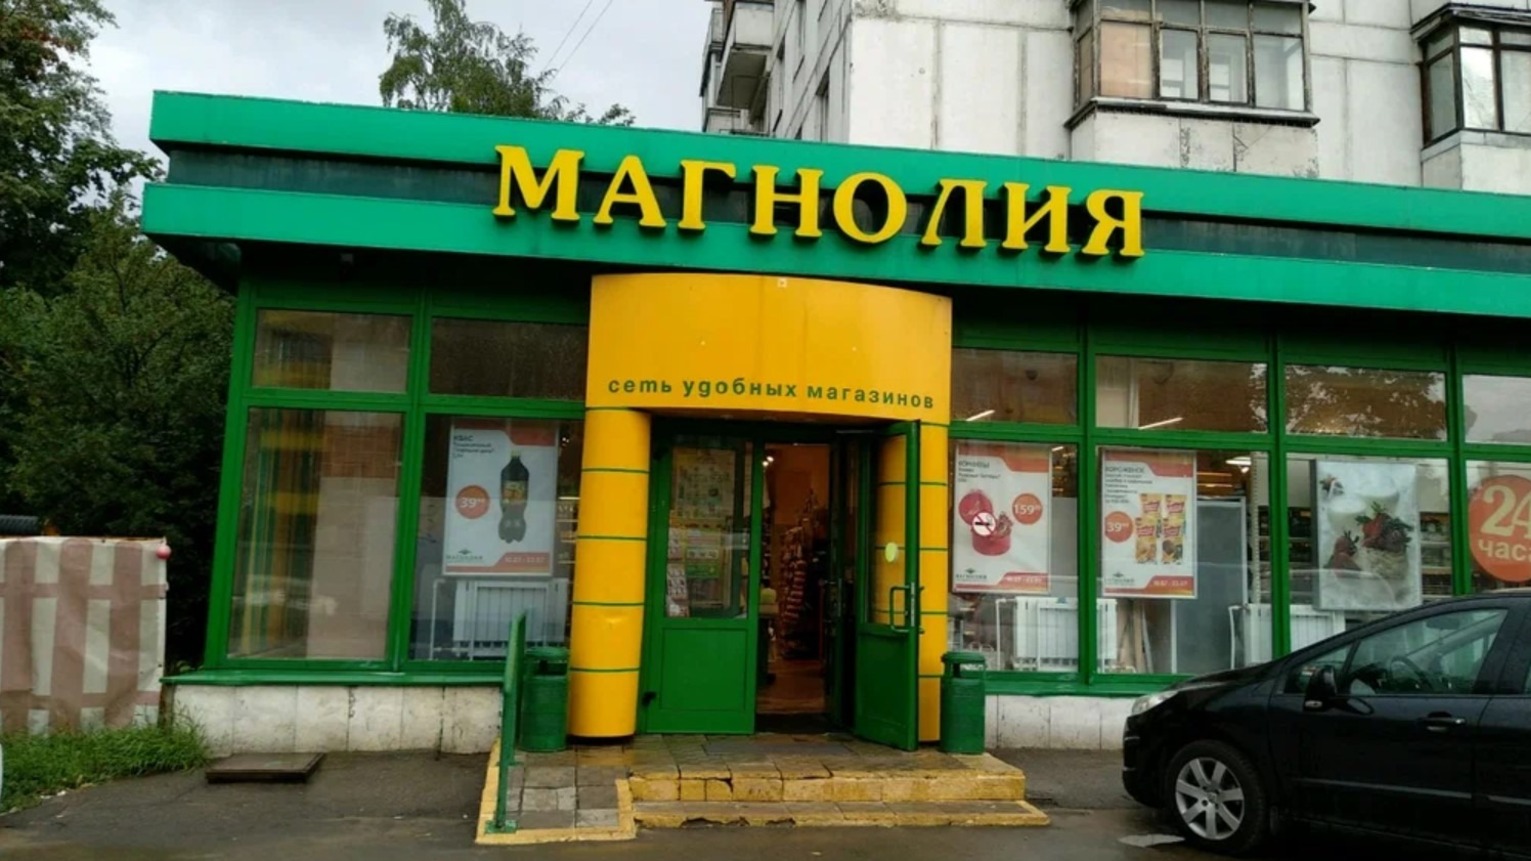 Недовольный клиент расстрелял продавцов магазина в Москве из аэрозольного пистолета